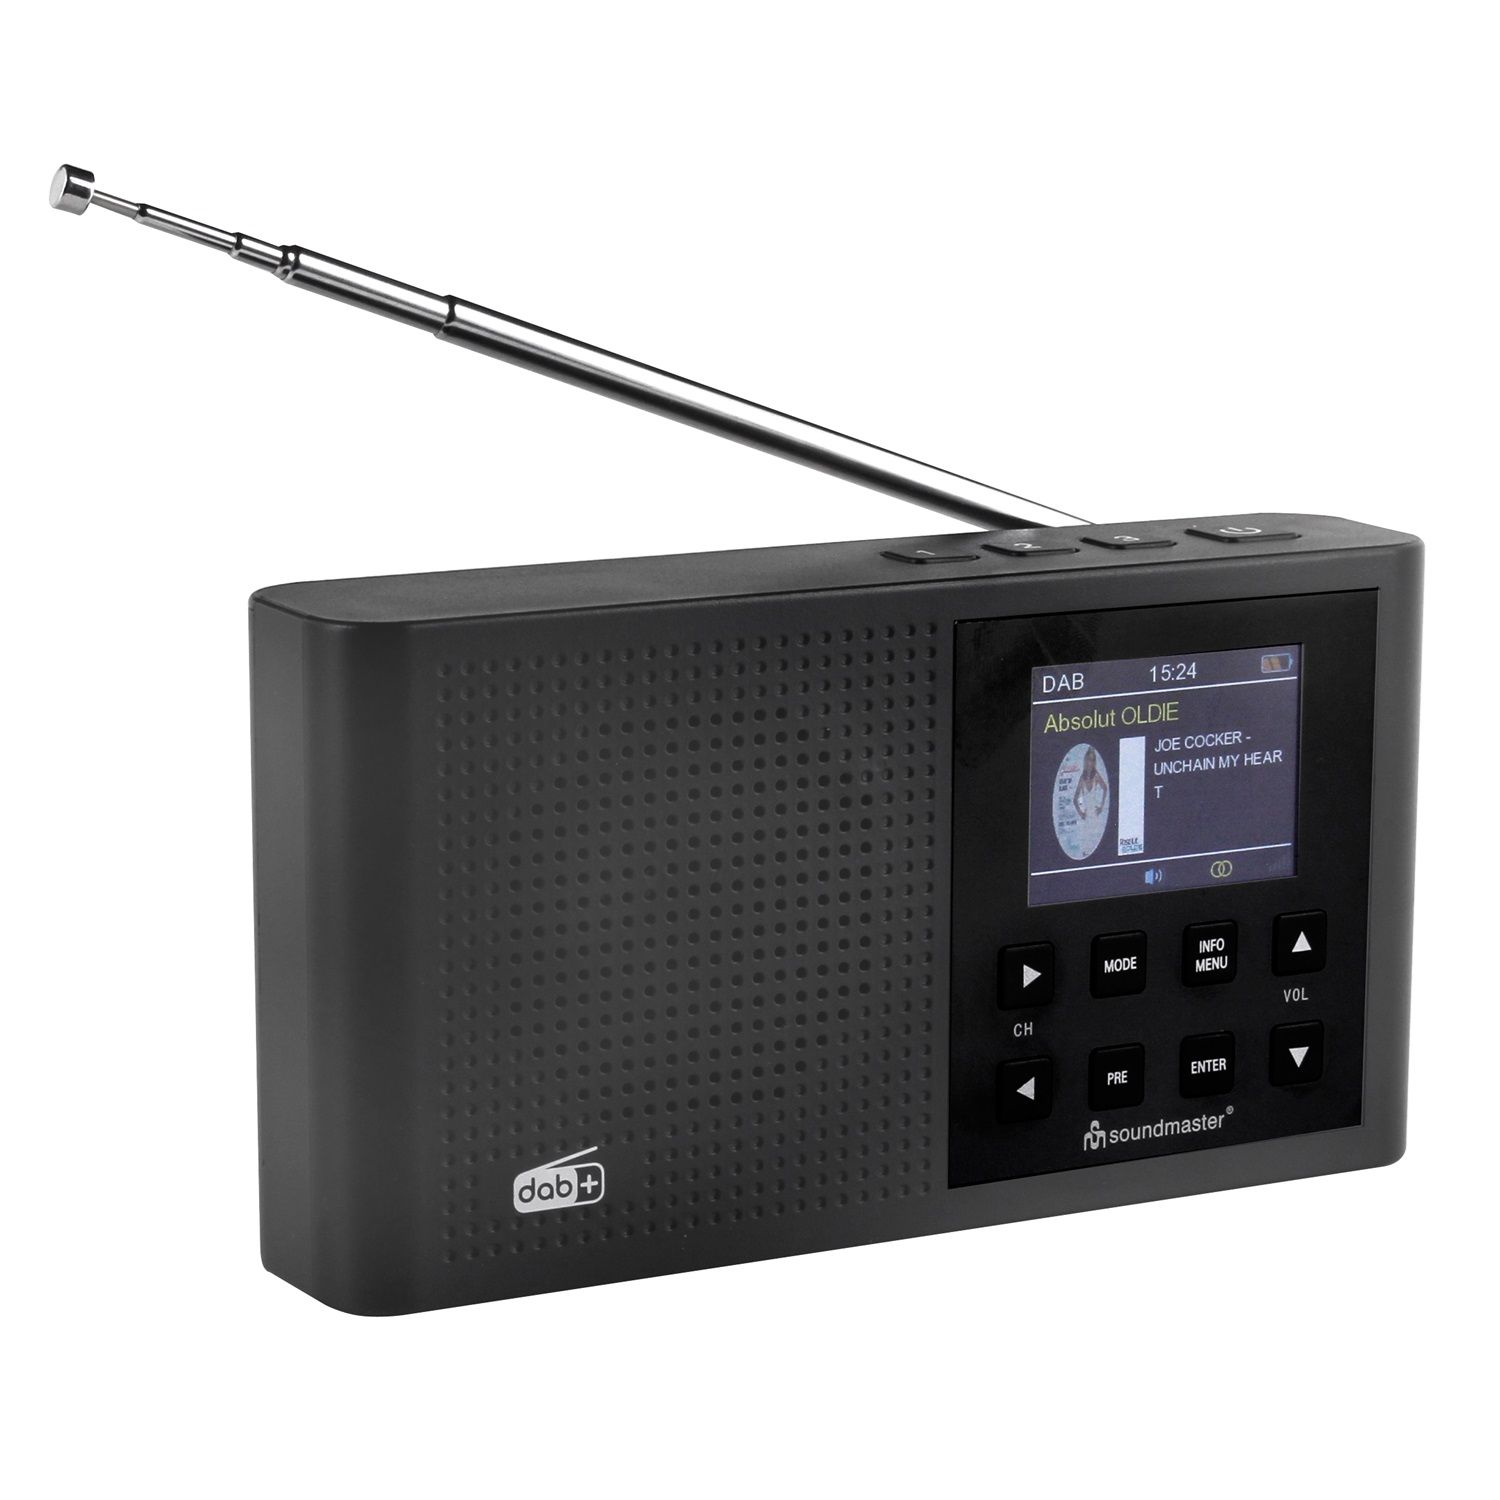 SOUNDMASTER DAB165SW Multifunktionsradio, DAB+, FM, Bluetooth, FM, DAB+, AM, DAB, schwarz